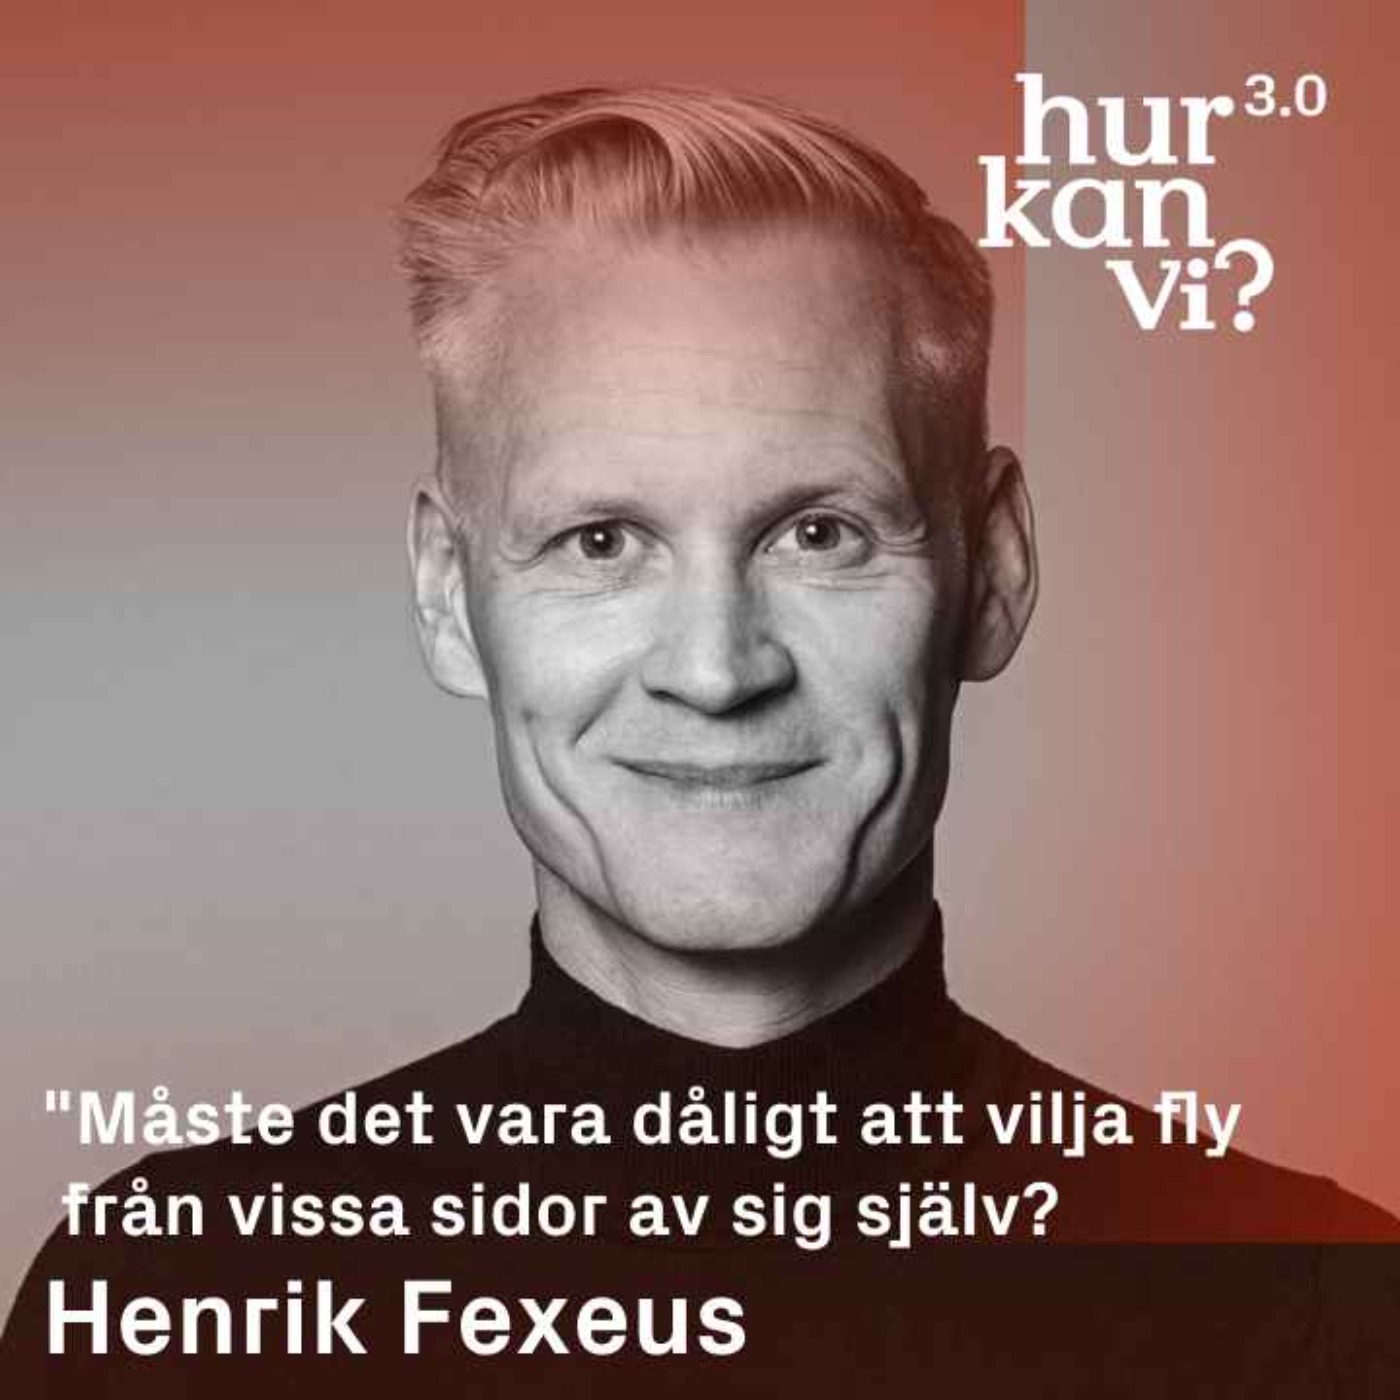 Henrik Fexeus - ”Måste det vara dåligt att vilja fly från vissa sidor av sig själv?”